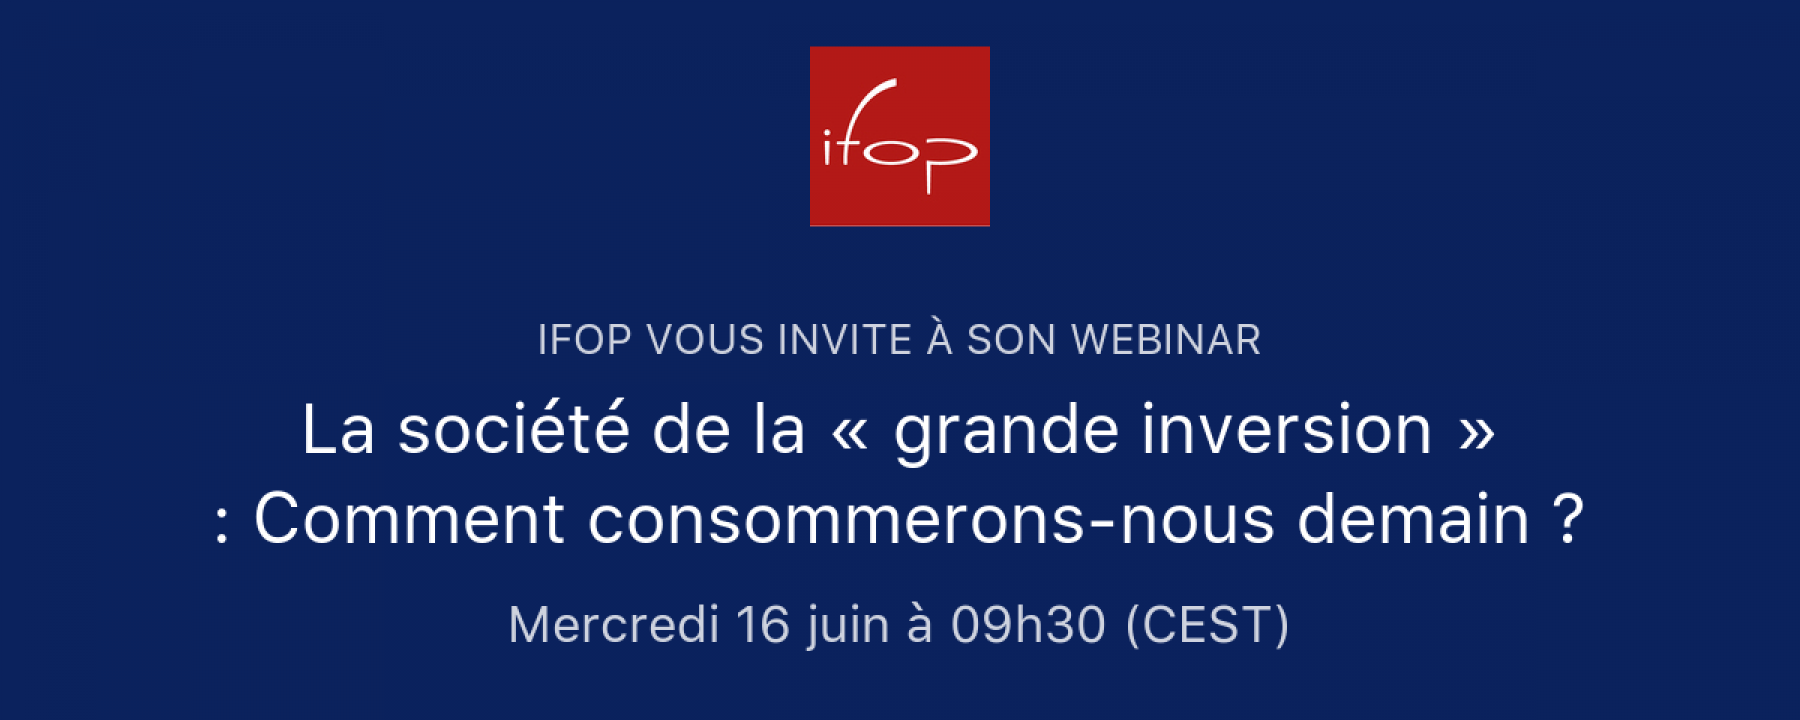 La société de la « grande inversion » : Comment consommerons-nous demain ? par l'IFOP le 16 juin 2021